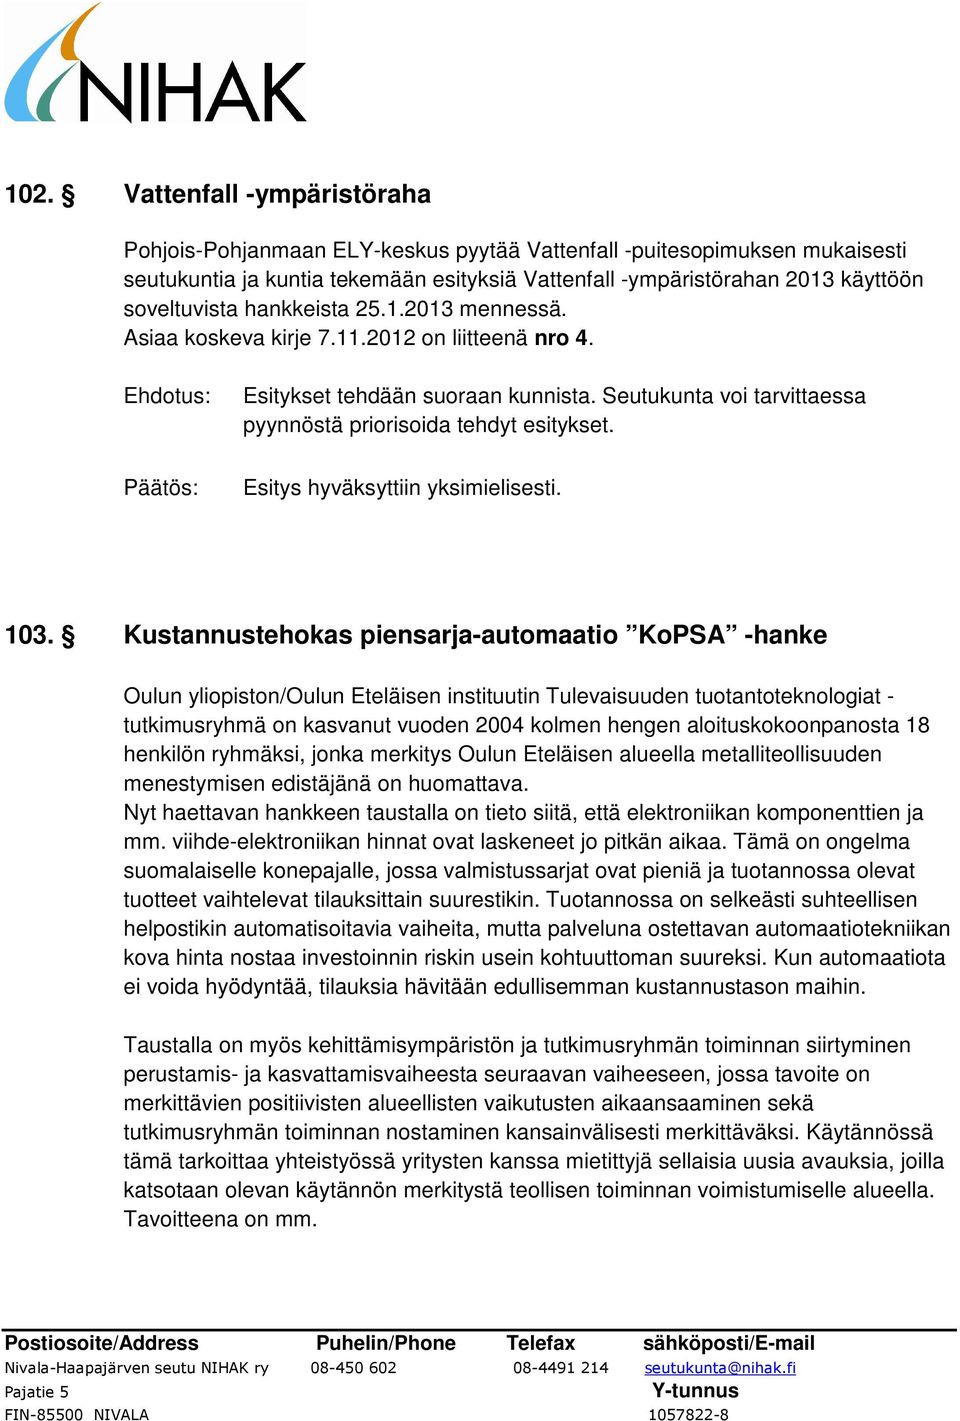 103. Kustannustehokas piensarja-automaatio KoPSA -hanke Oulun yliopiston/oulun Eteläisen instituutin Tulevaisuuden tuotantoteknologiat - tutkimusryhmä on kasvanut vuoden 2004 kolmen hengen